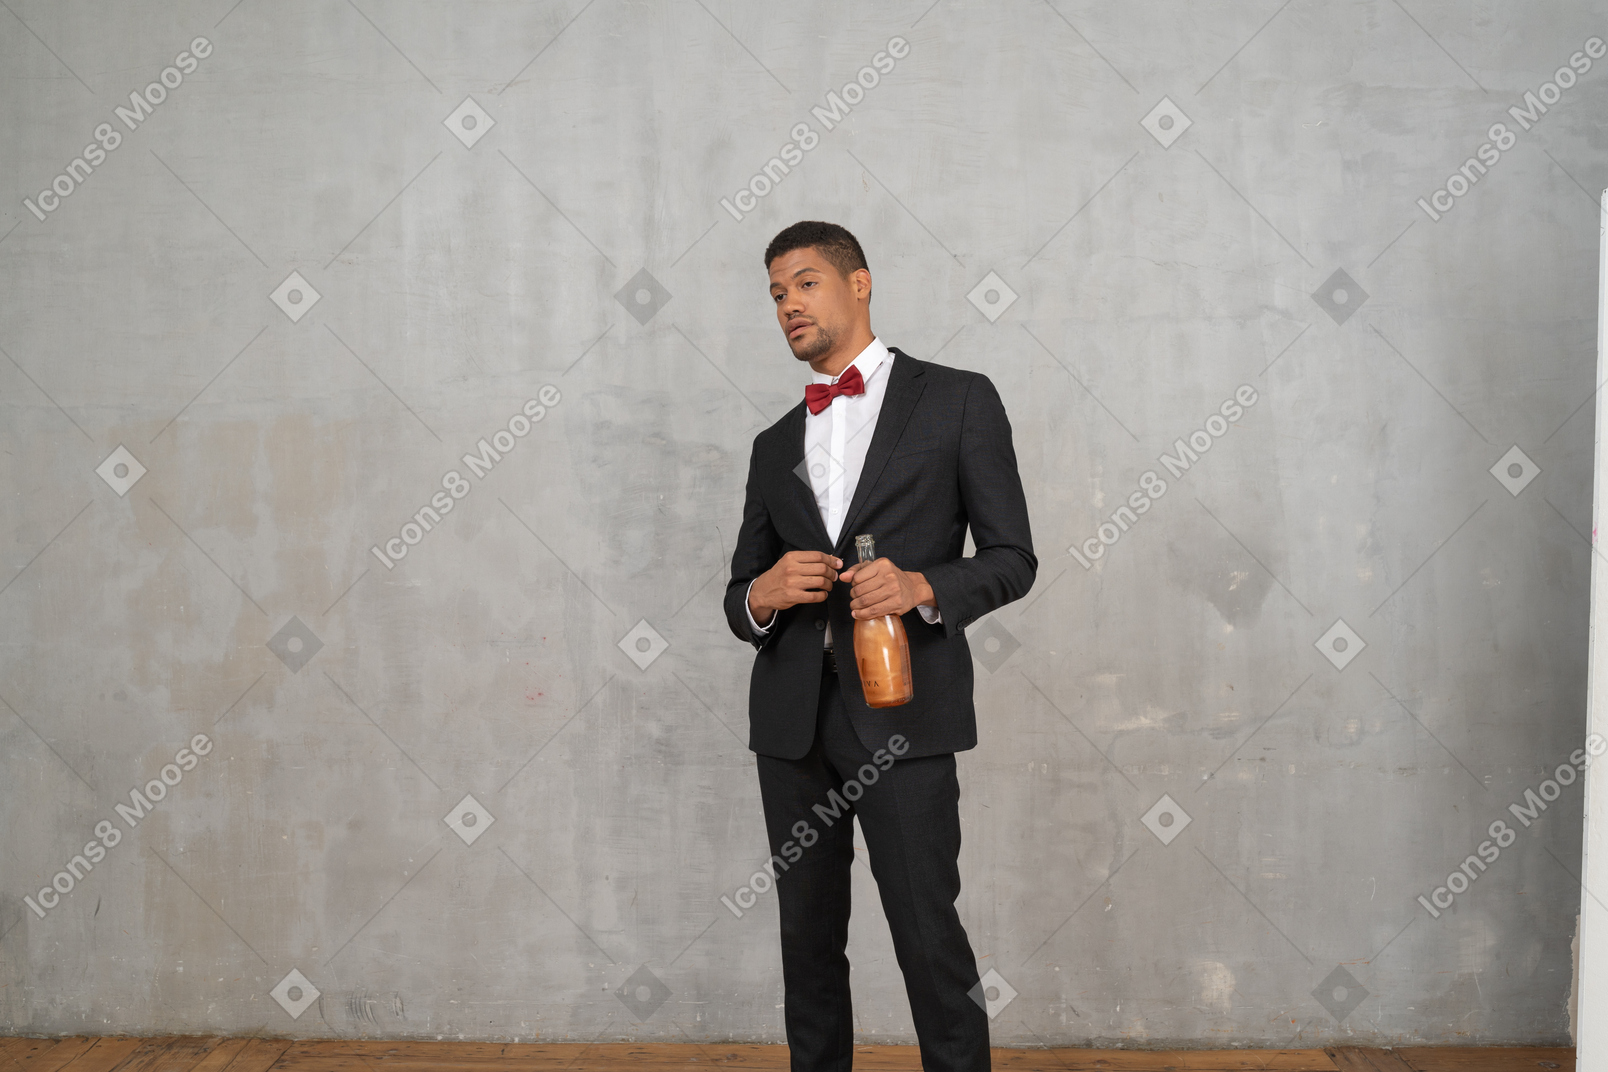 穿着西装打领结的男人手里拿着一个瓶子站着